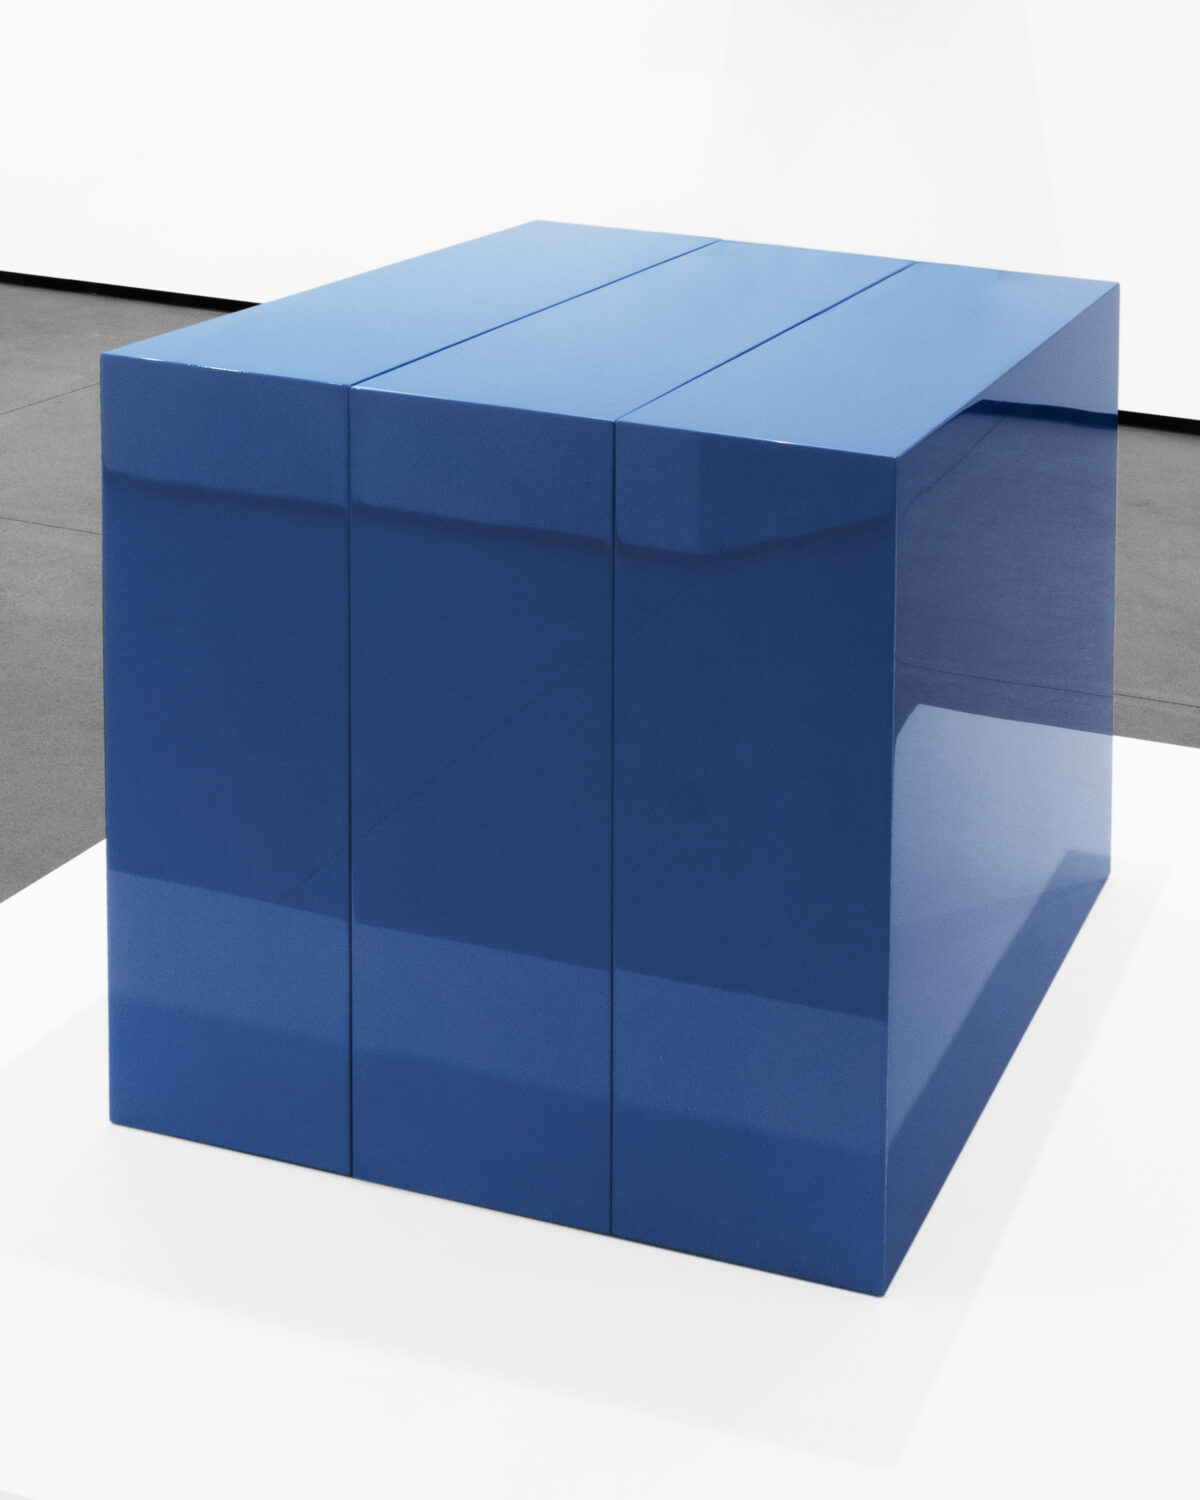 A blue, shiny box.